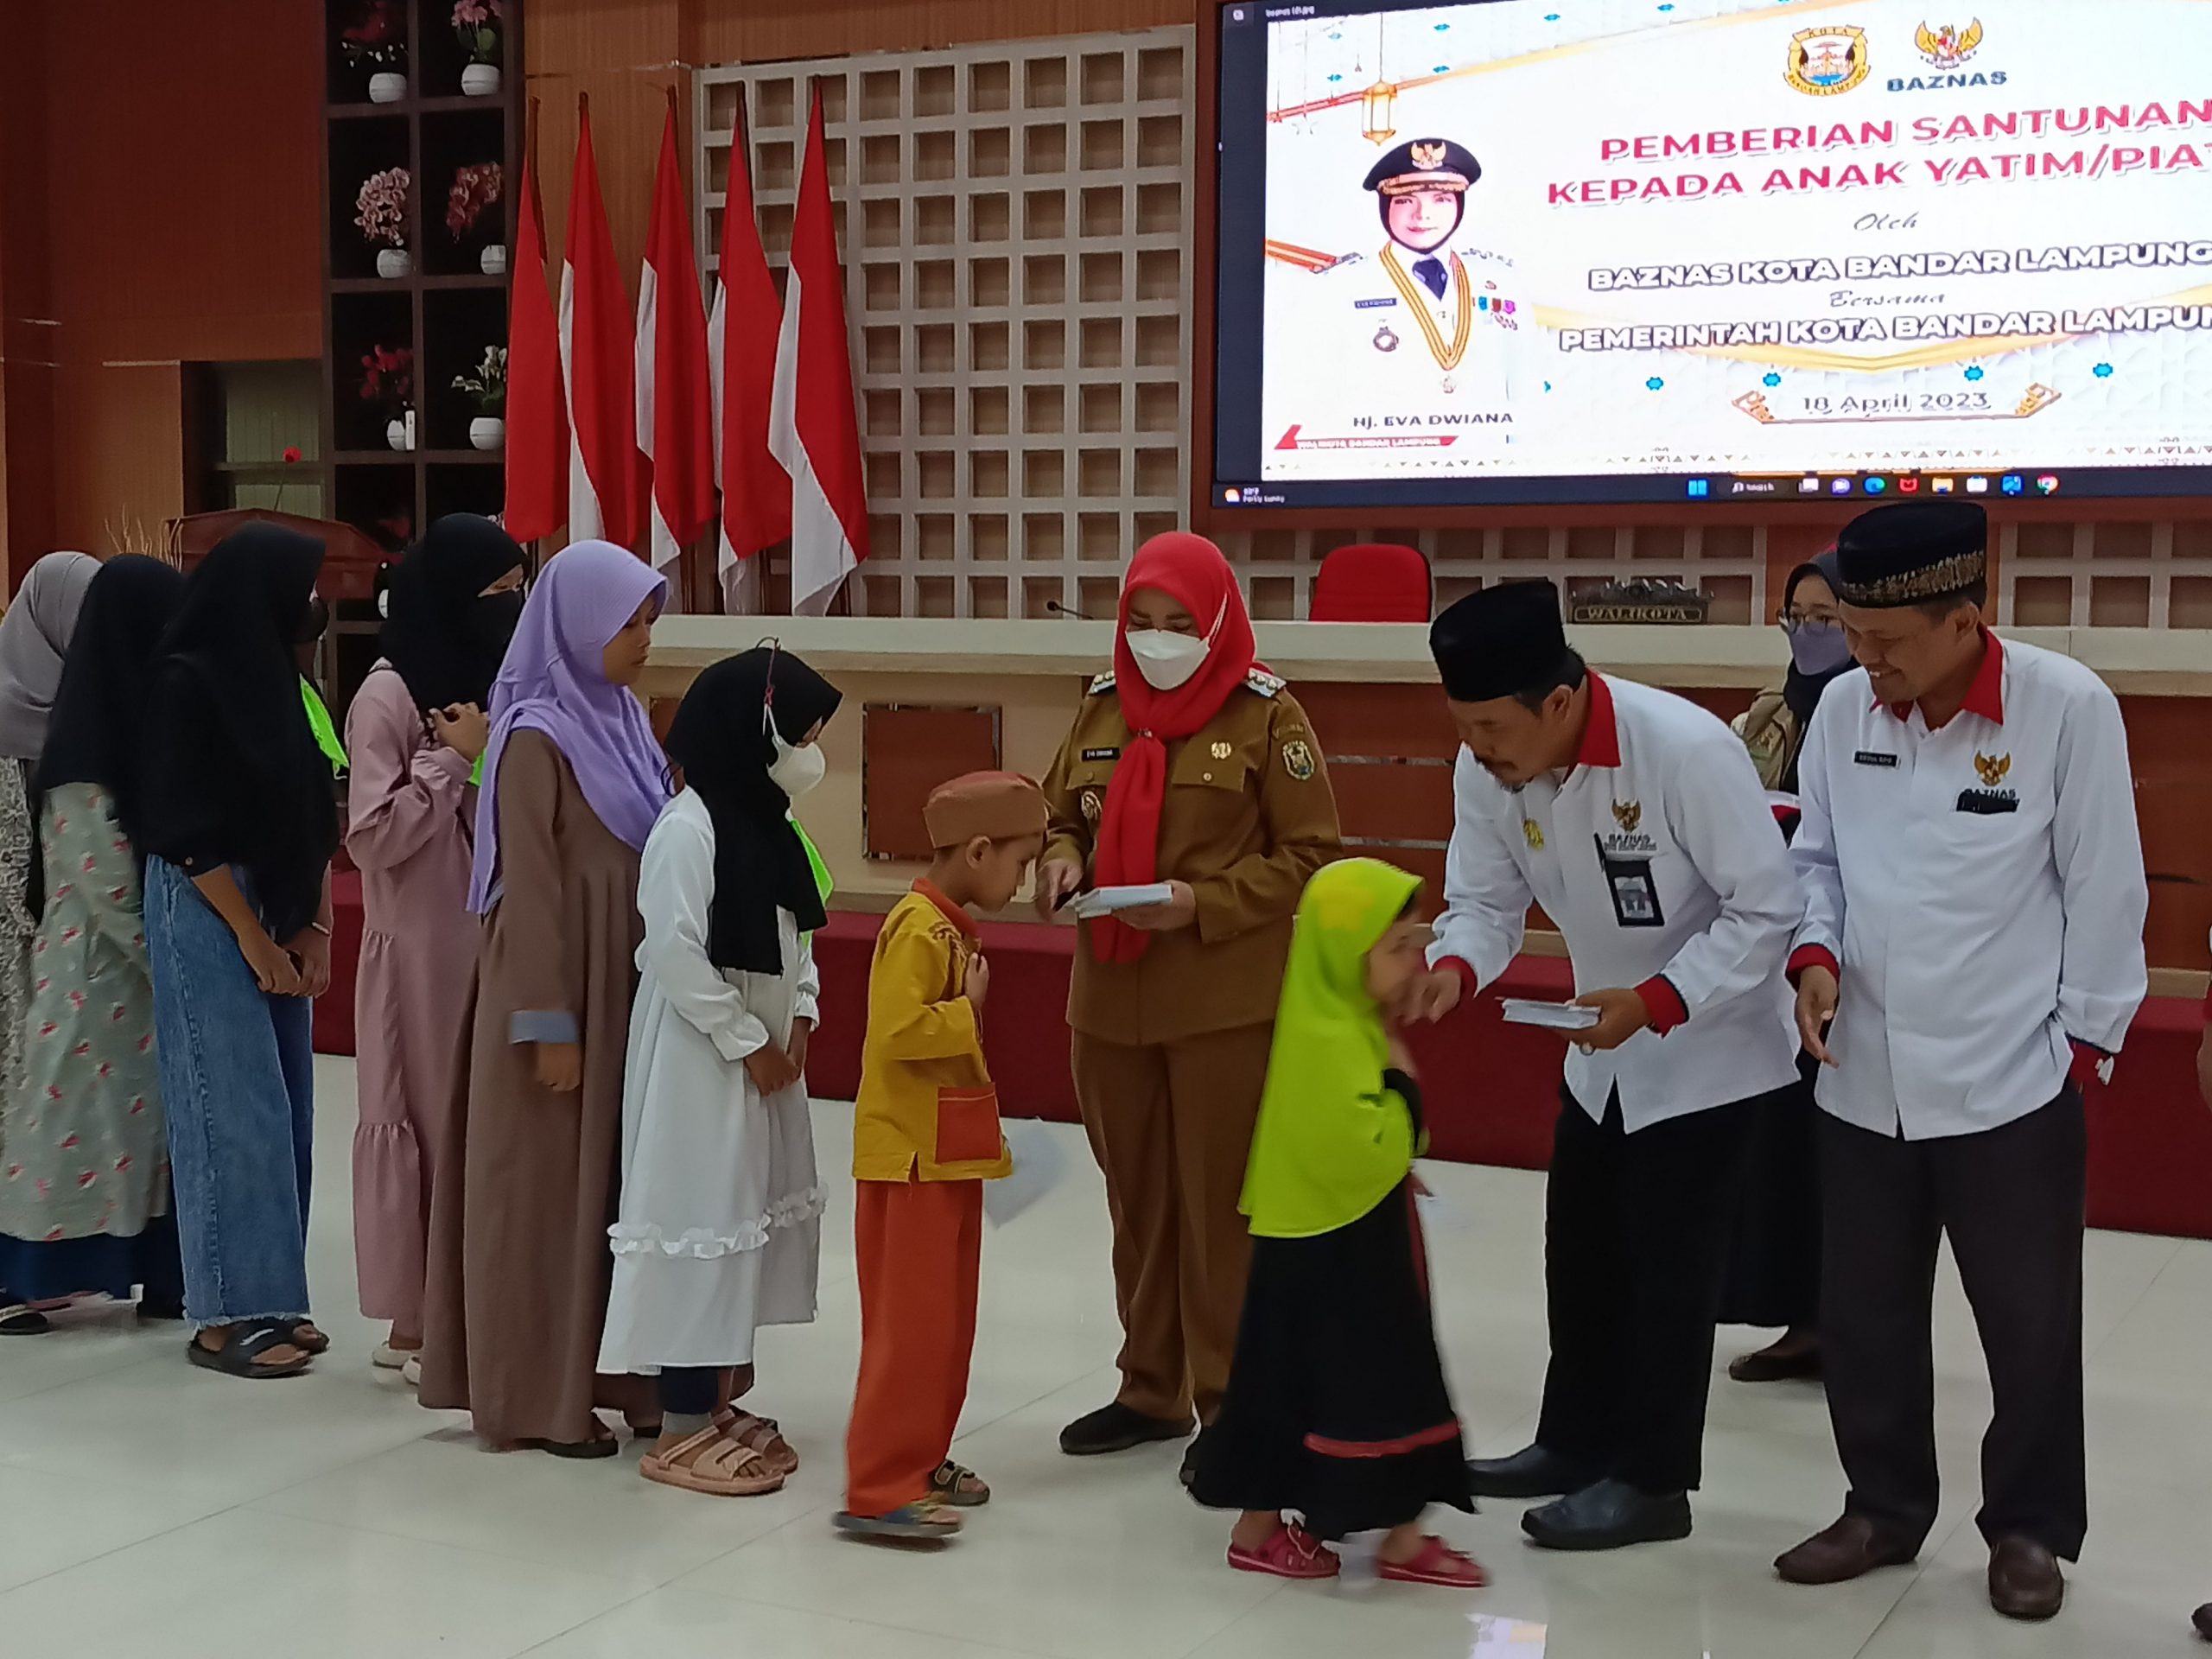 Walikota Bersama Baznas Salurkan Santunan ke 500 Anak Yatim, Foto|| (Dok. Jurai.id)